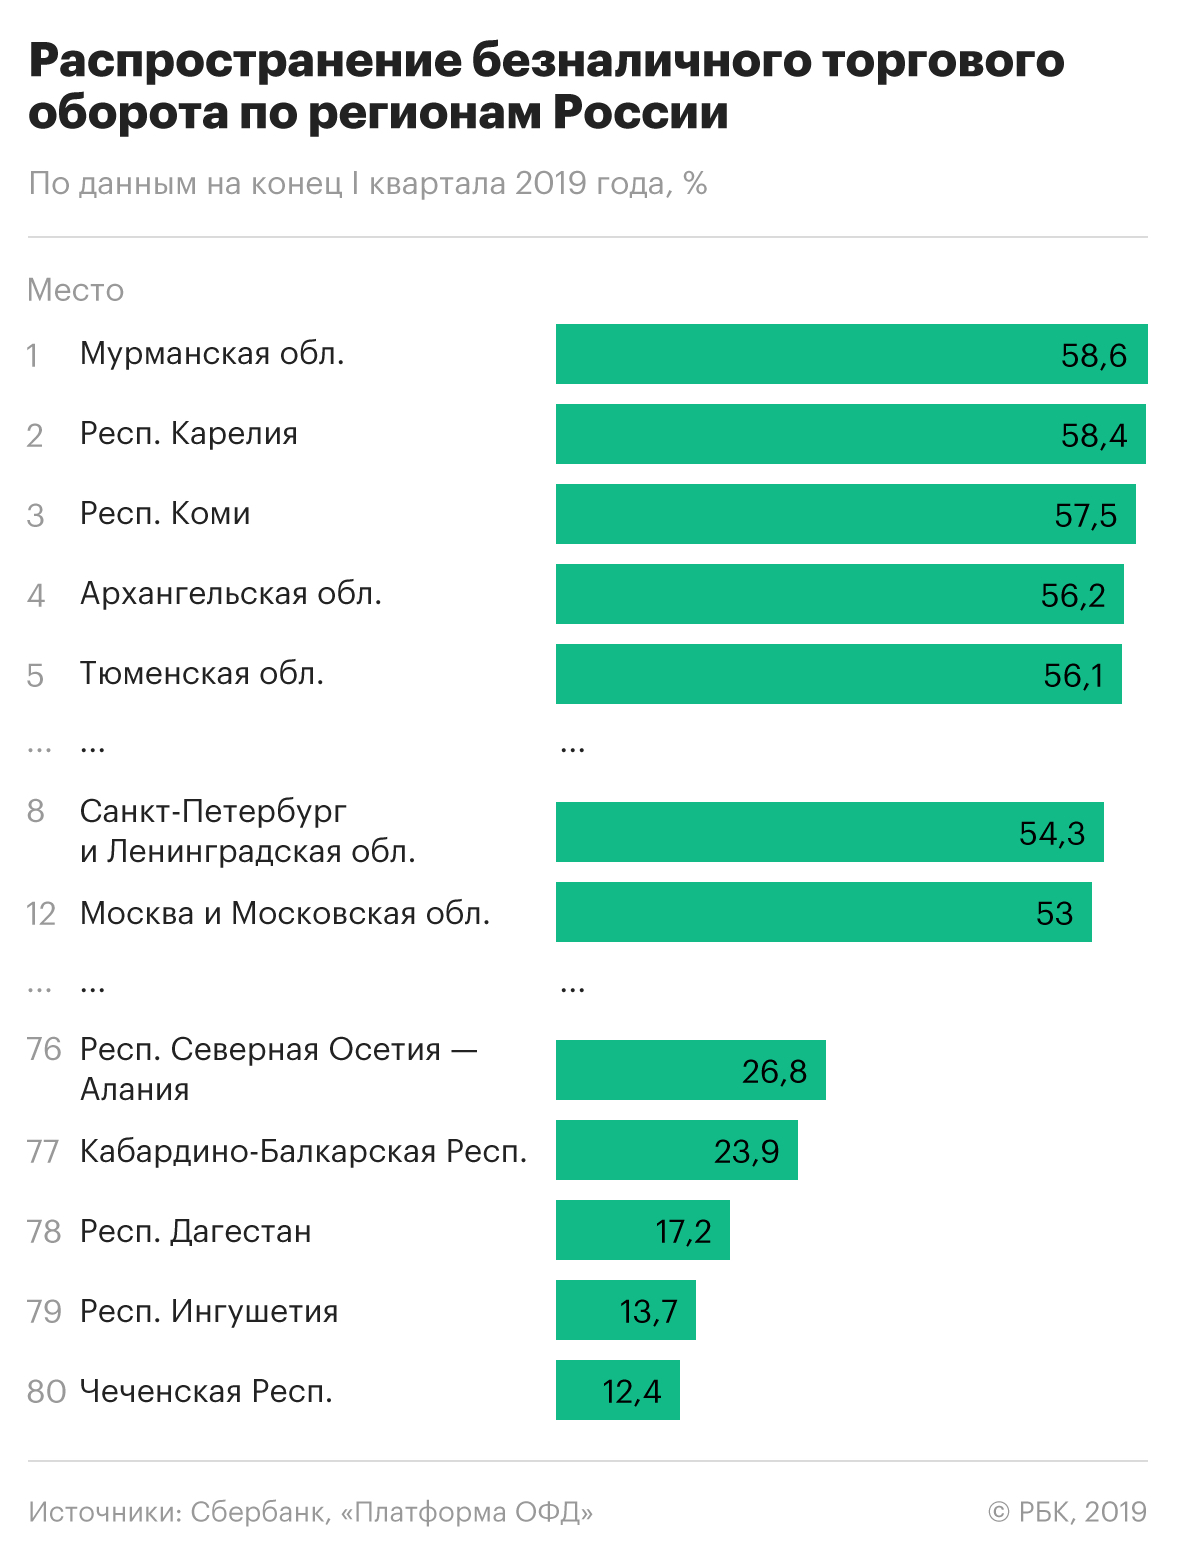 Москва не вошла в топ-10 регионов-лидеров по доле оплаты покупок картами